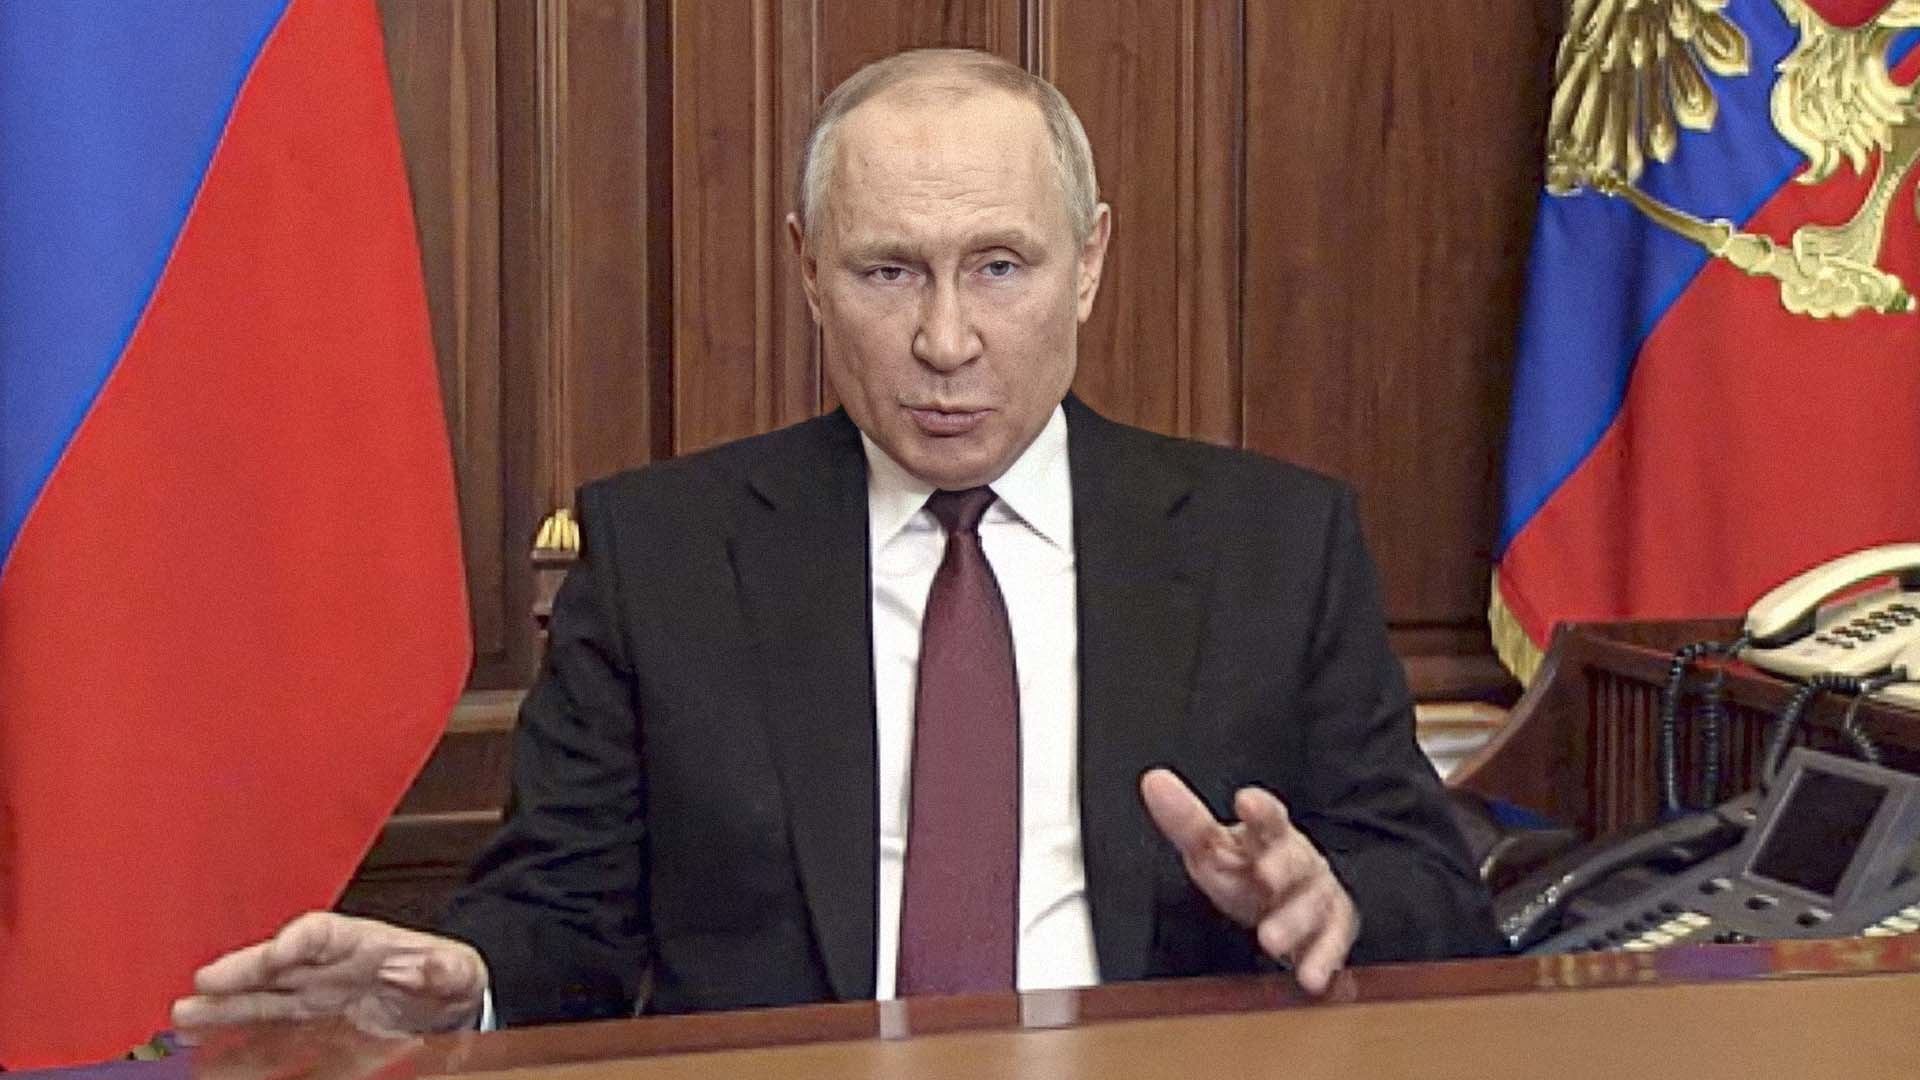 صورة بوتين يستفيد من الدرس الموجع الذي لقنه إياه الغرب في سوريا ويجتاح أوكرانيا